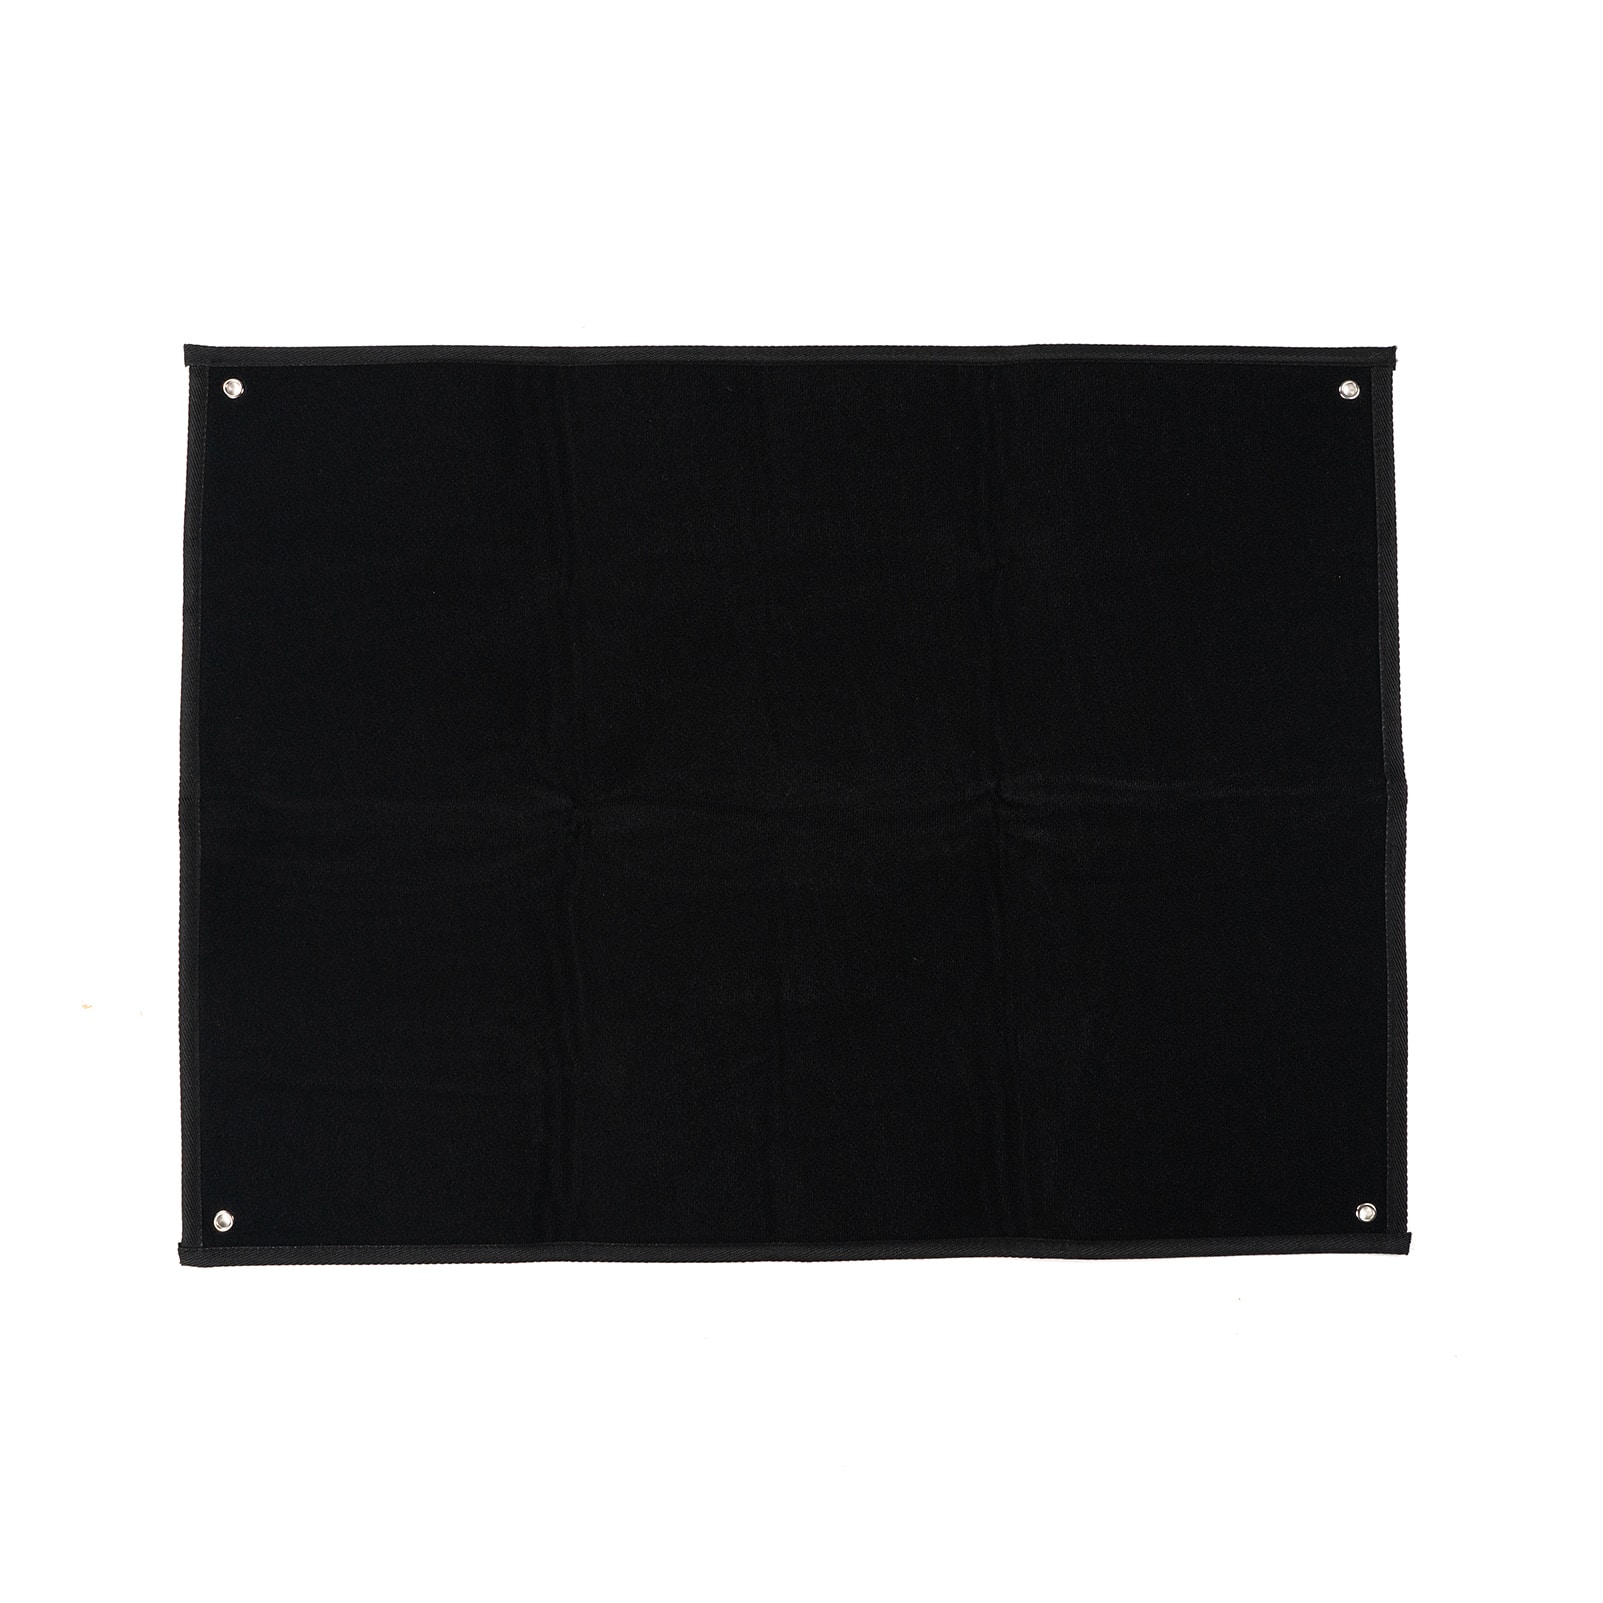 Patch PVC SECURITE noir lettres blanches 30 x 10 cm - BANDEAUX, ÉCU